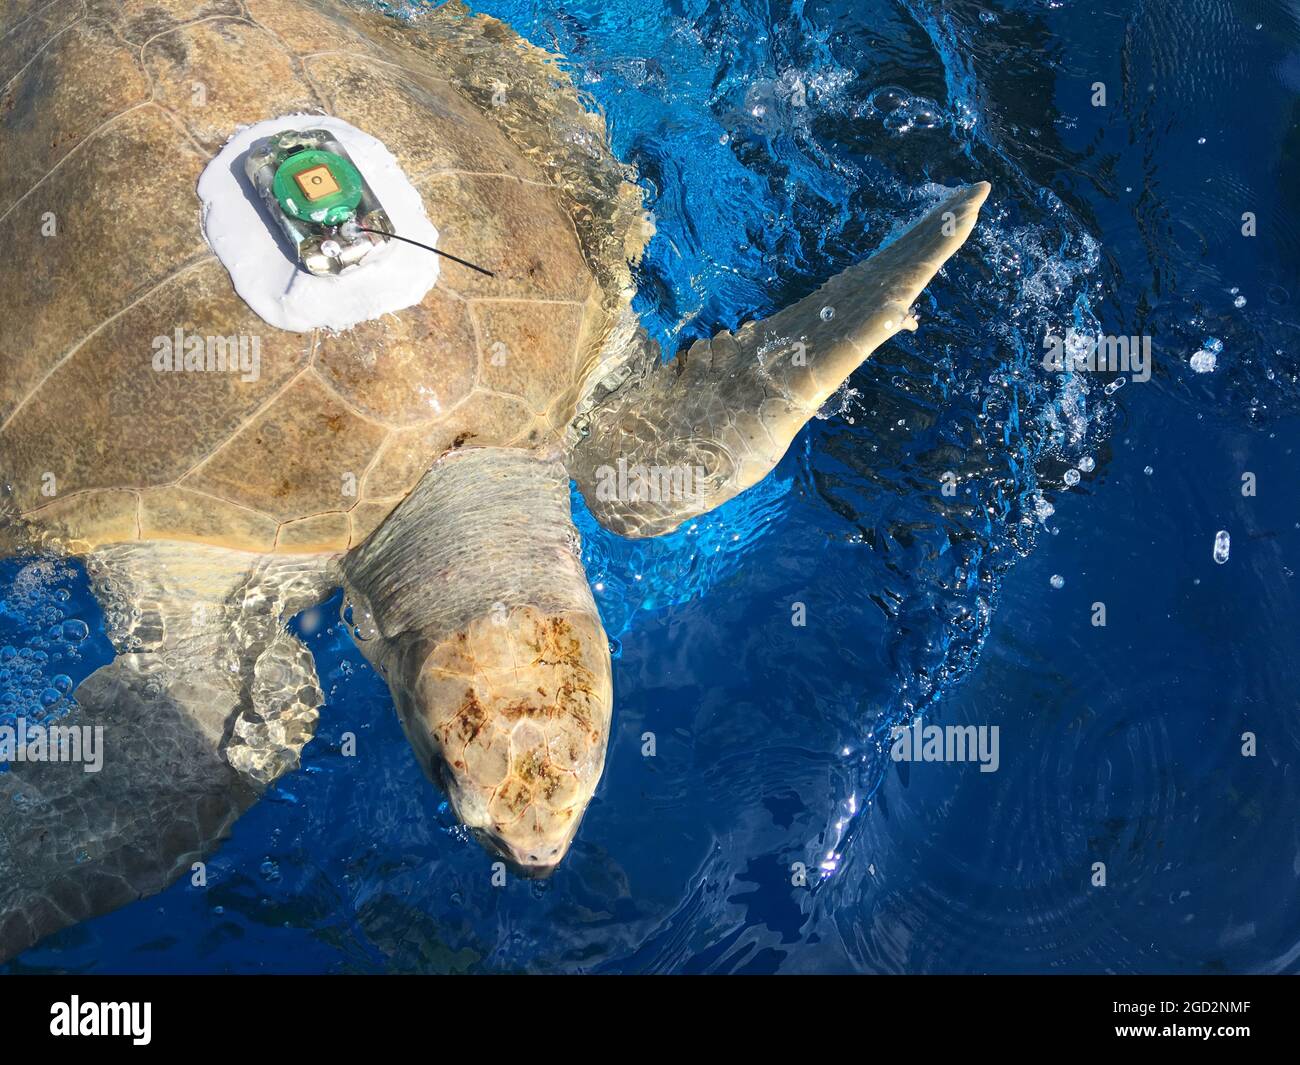 La tartaruga marina di olive ridley viene preppata per il rilascio ca. 8 settembre 2017 Foto Stock